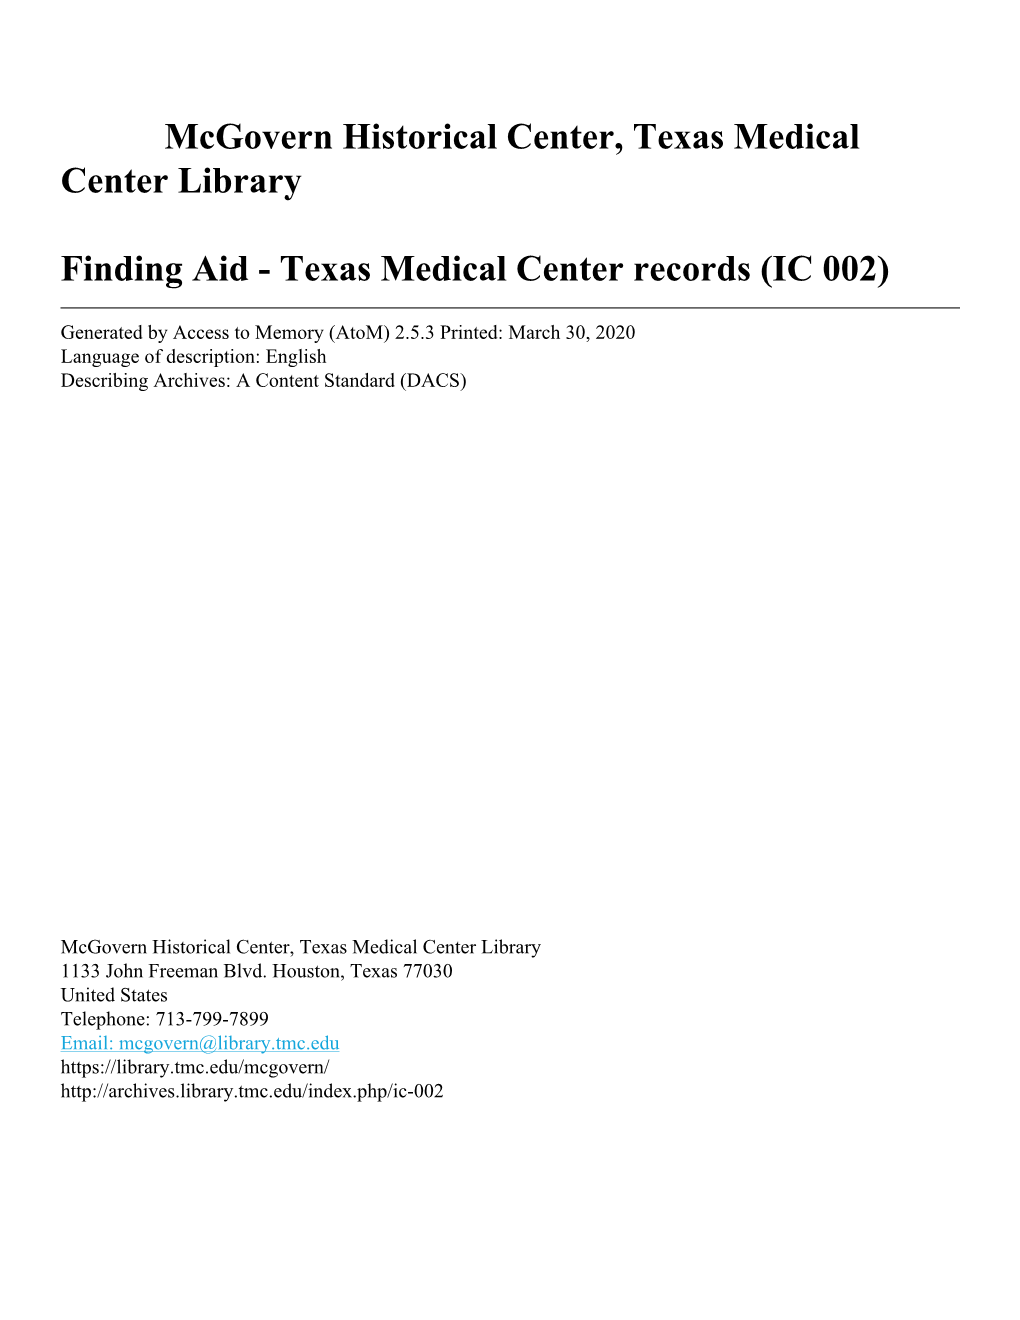 Ical Center, Texas Medical Center Library